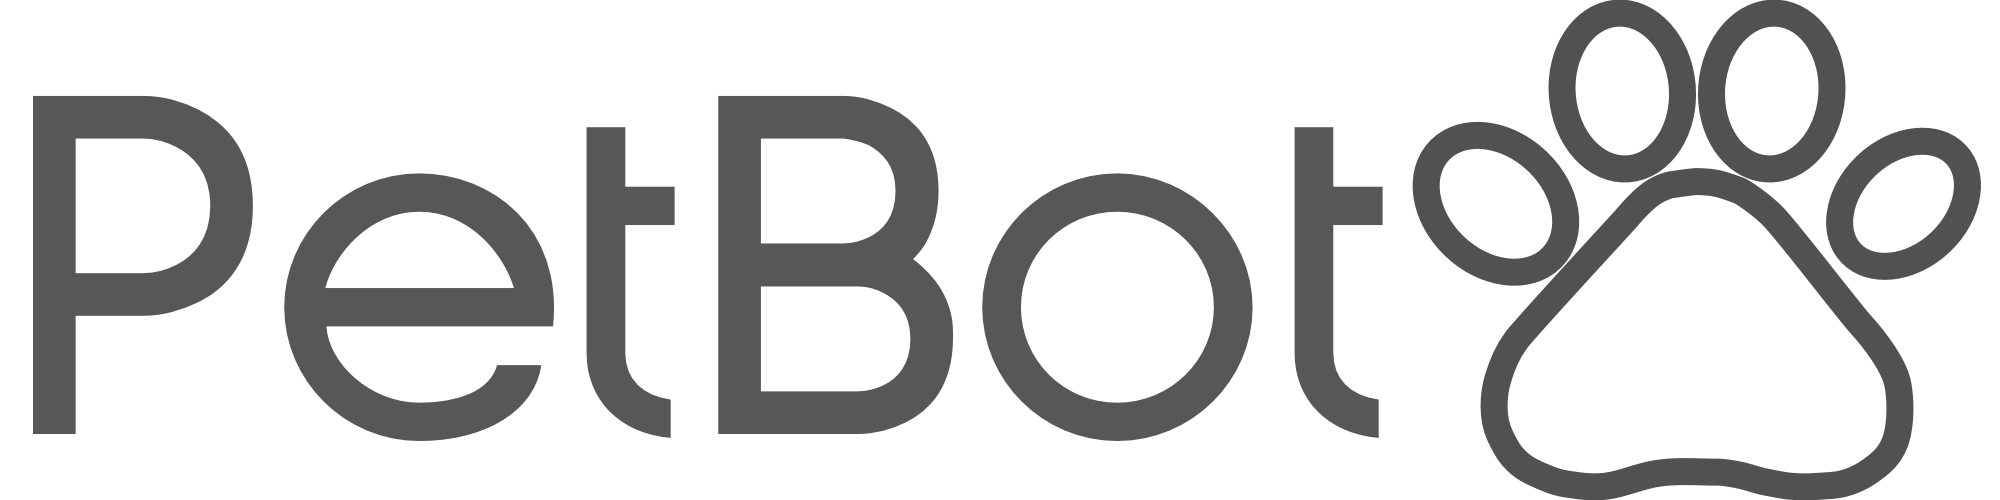 petbot Logo